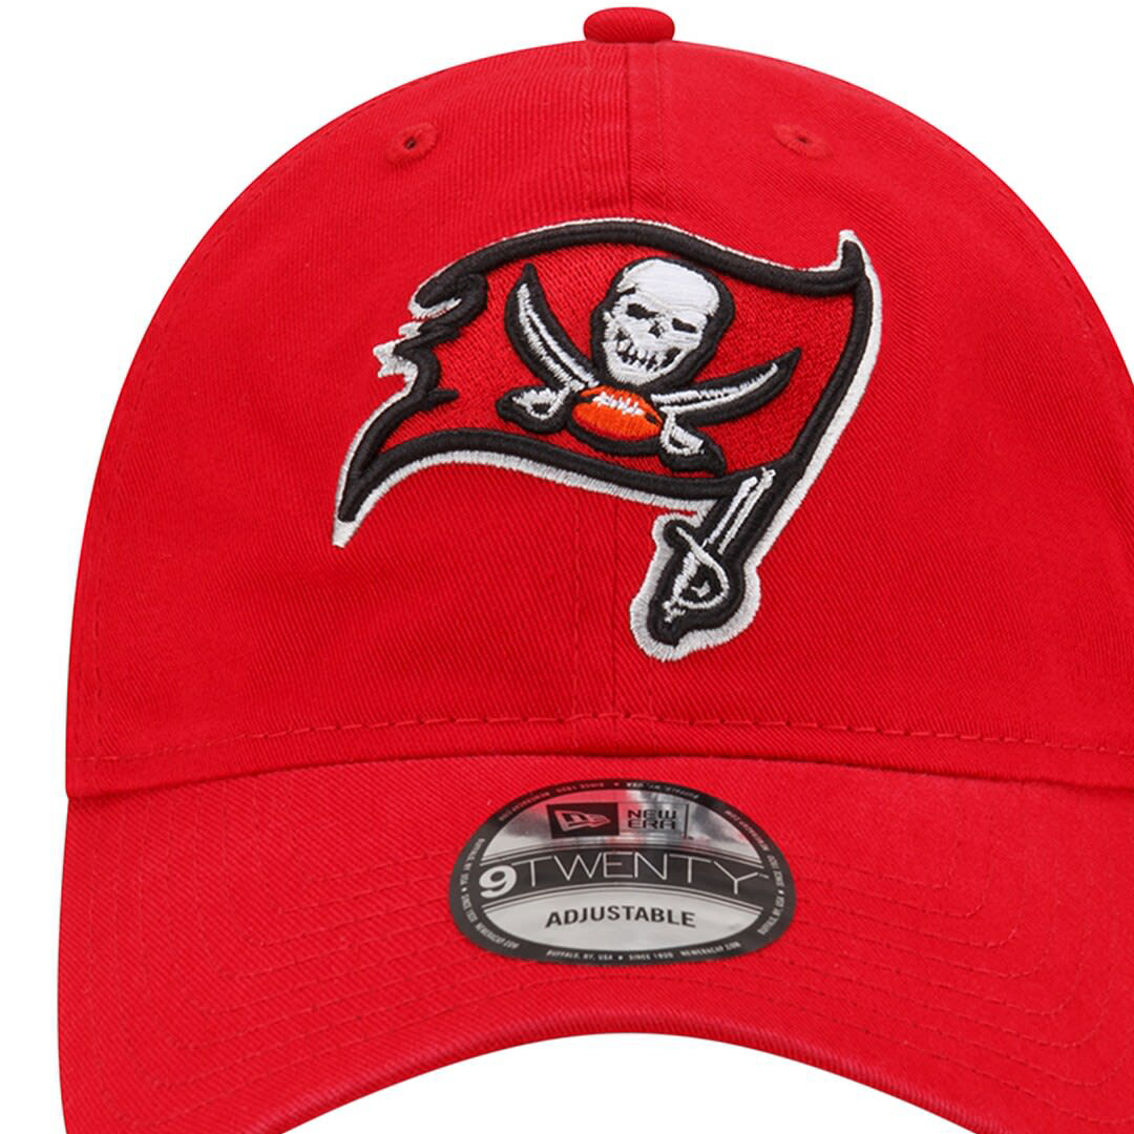 New Era Men's Red Tampa Bay Buccaneers Distinct 9TWENTY Adjustable Hat - Image 3 of 4